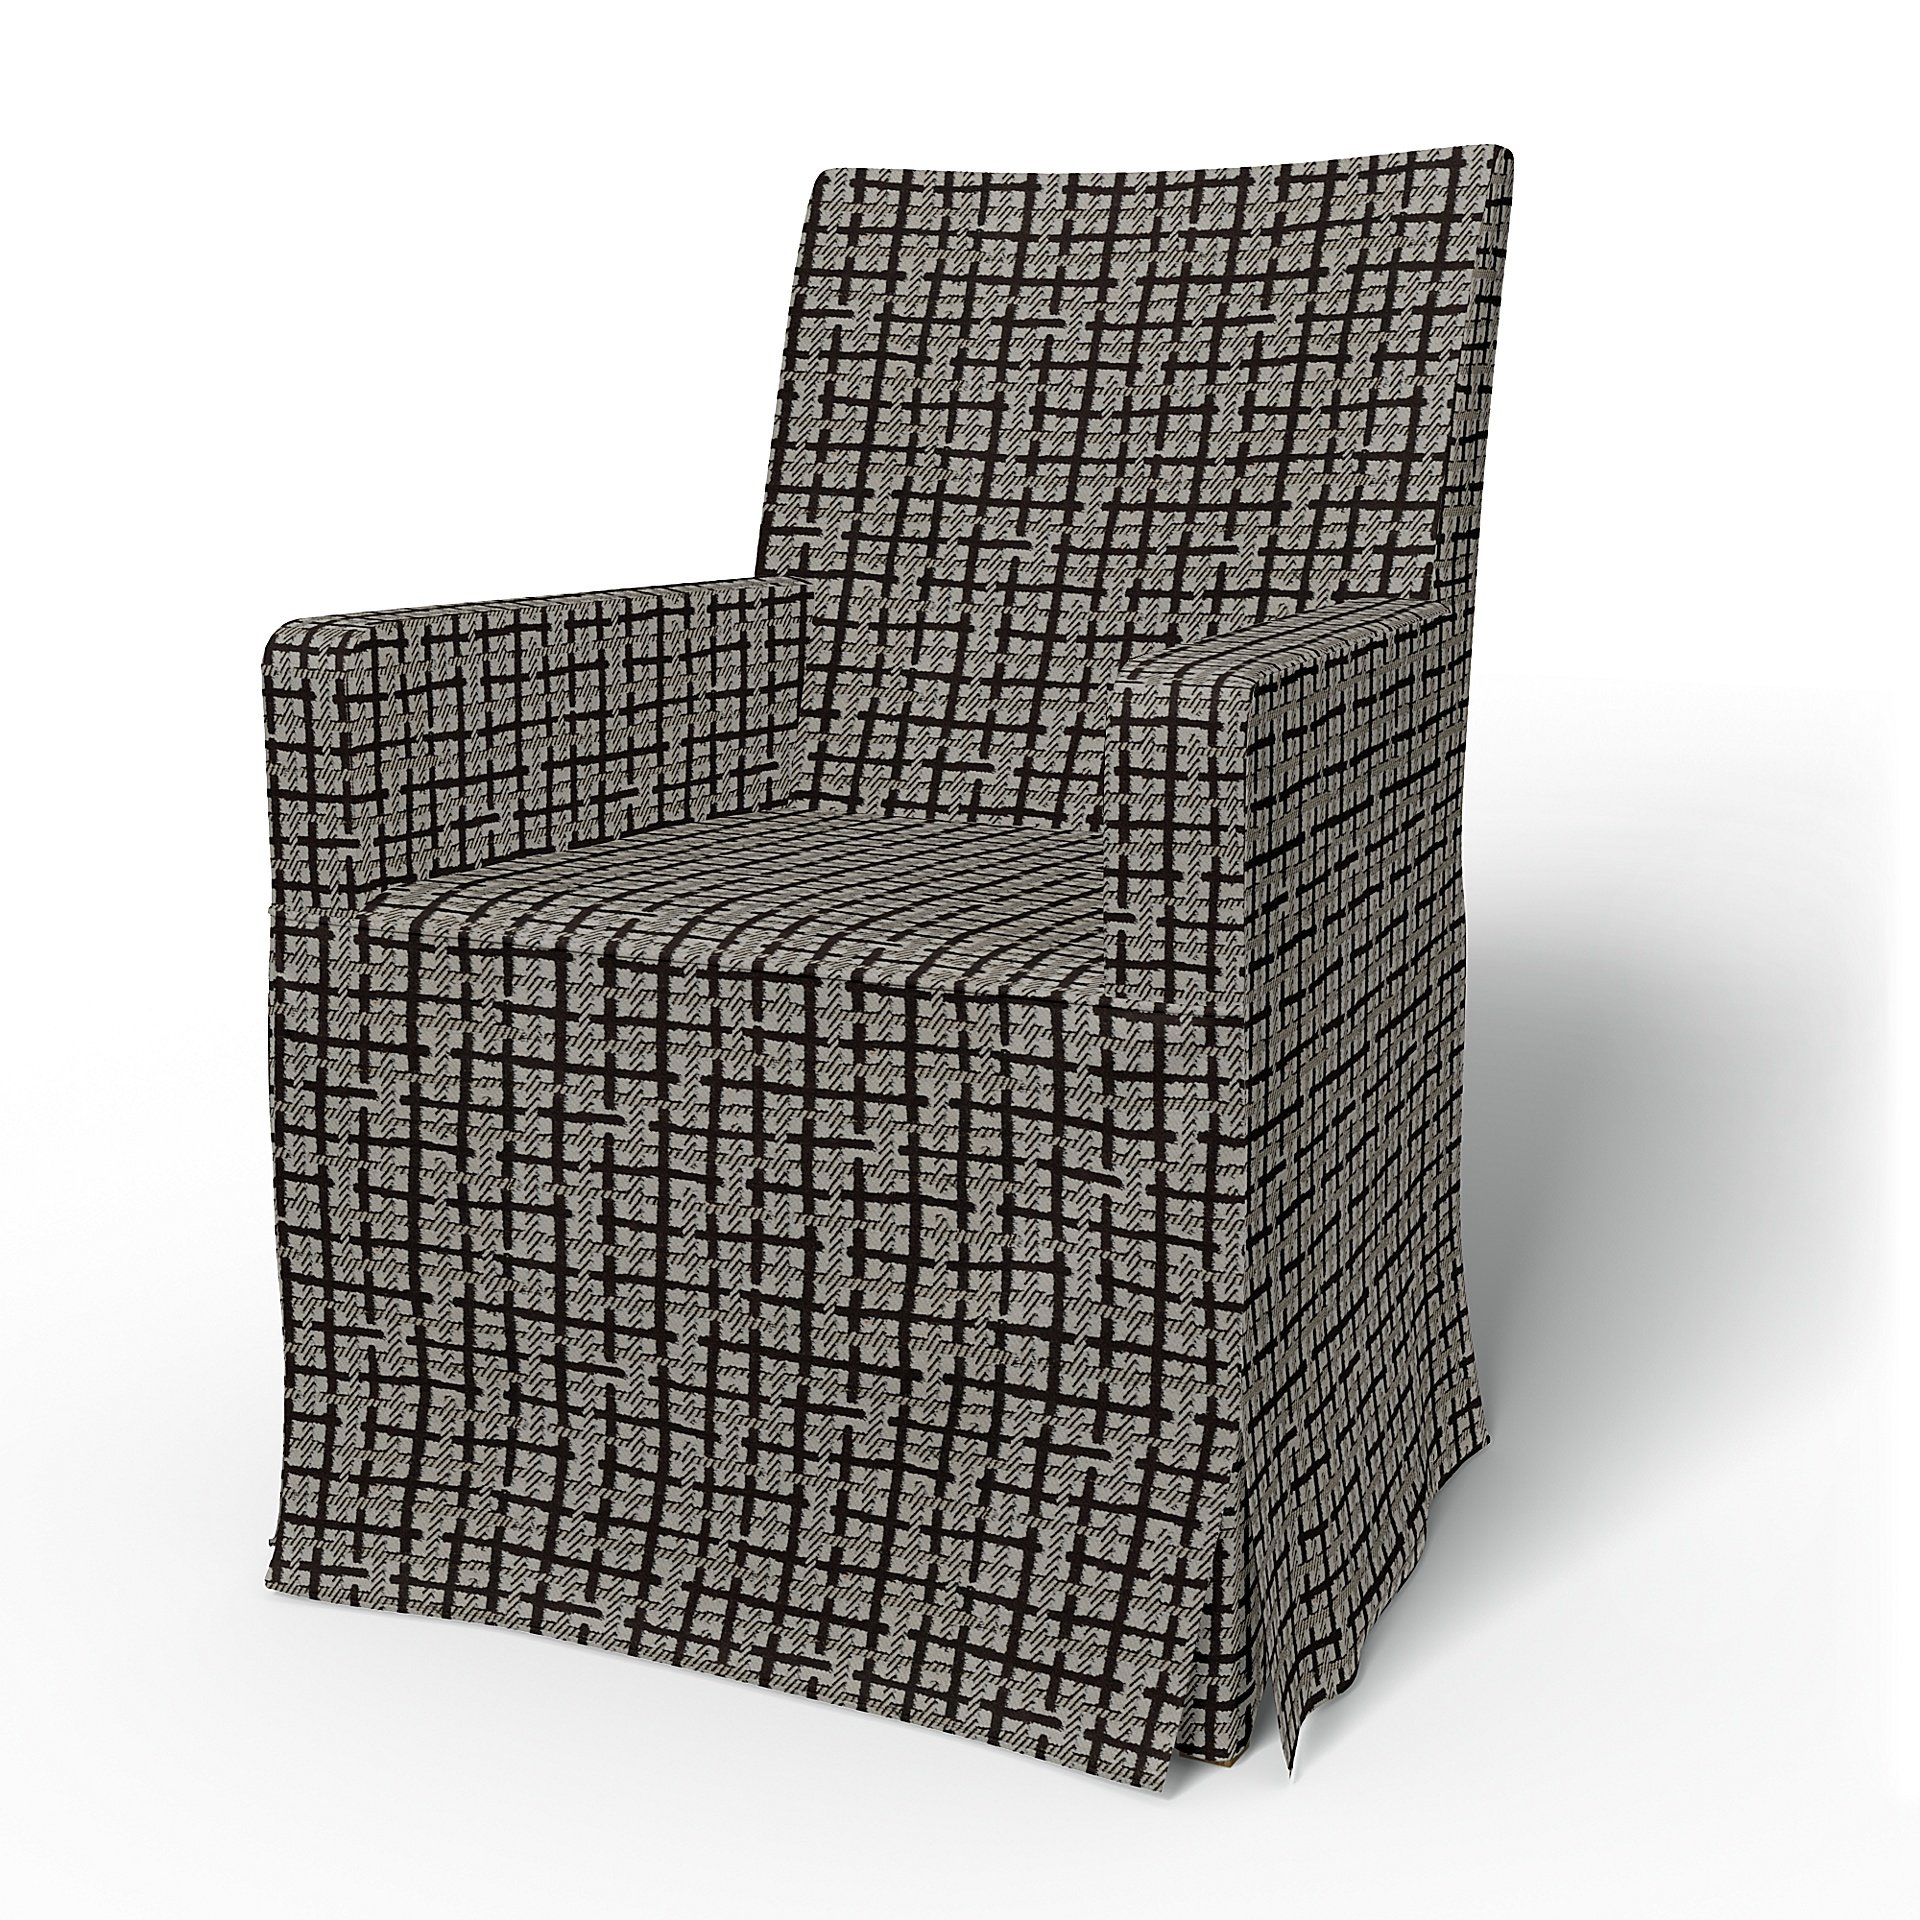 IKEA - Henriksdal, Chair cover w/ armrests, long skirt box pleat, Chocolate, Velvet - Bemz